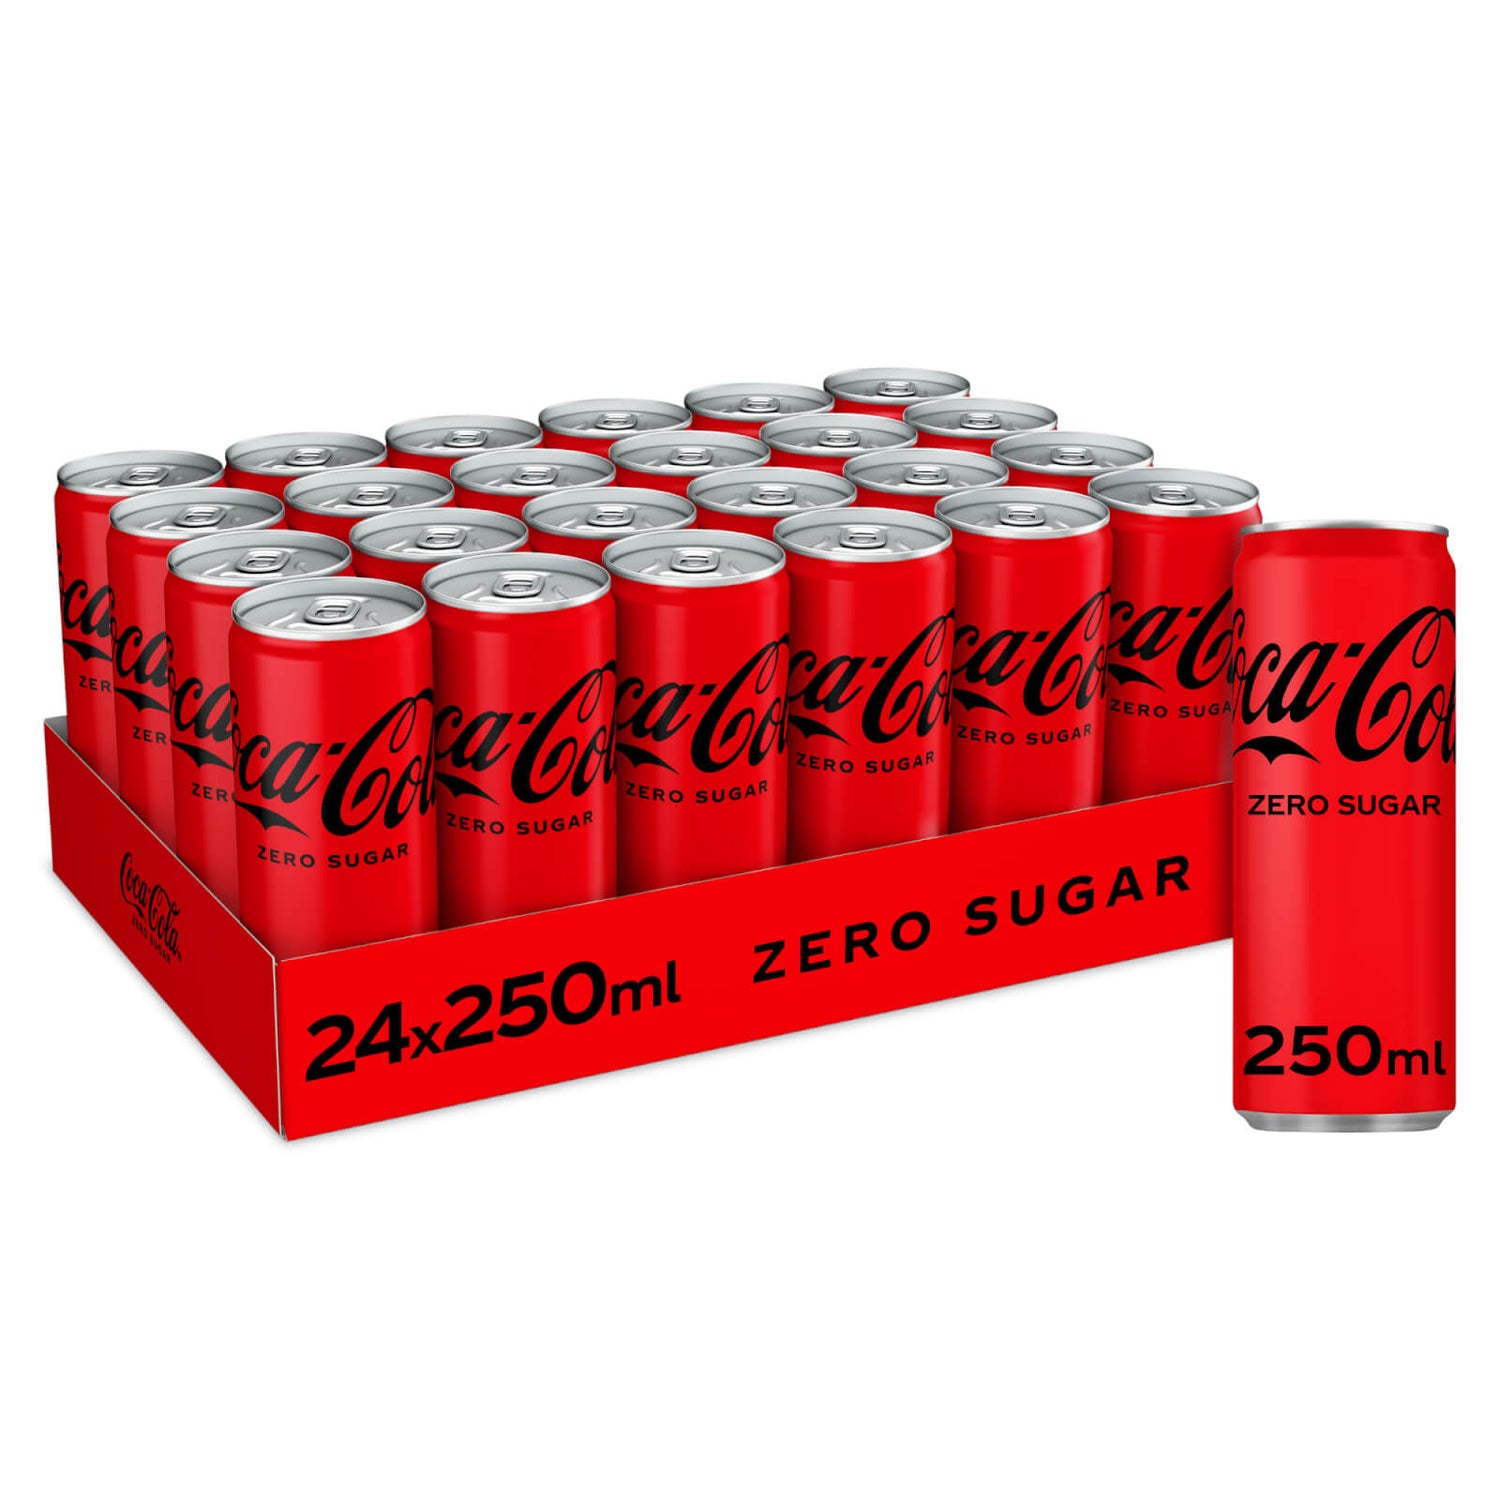 Coca-Cola Zero Sugar 24 x 250ml Cans